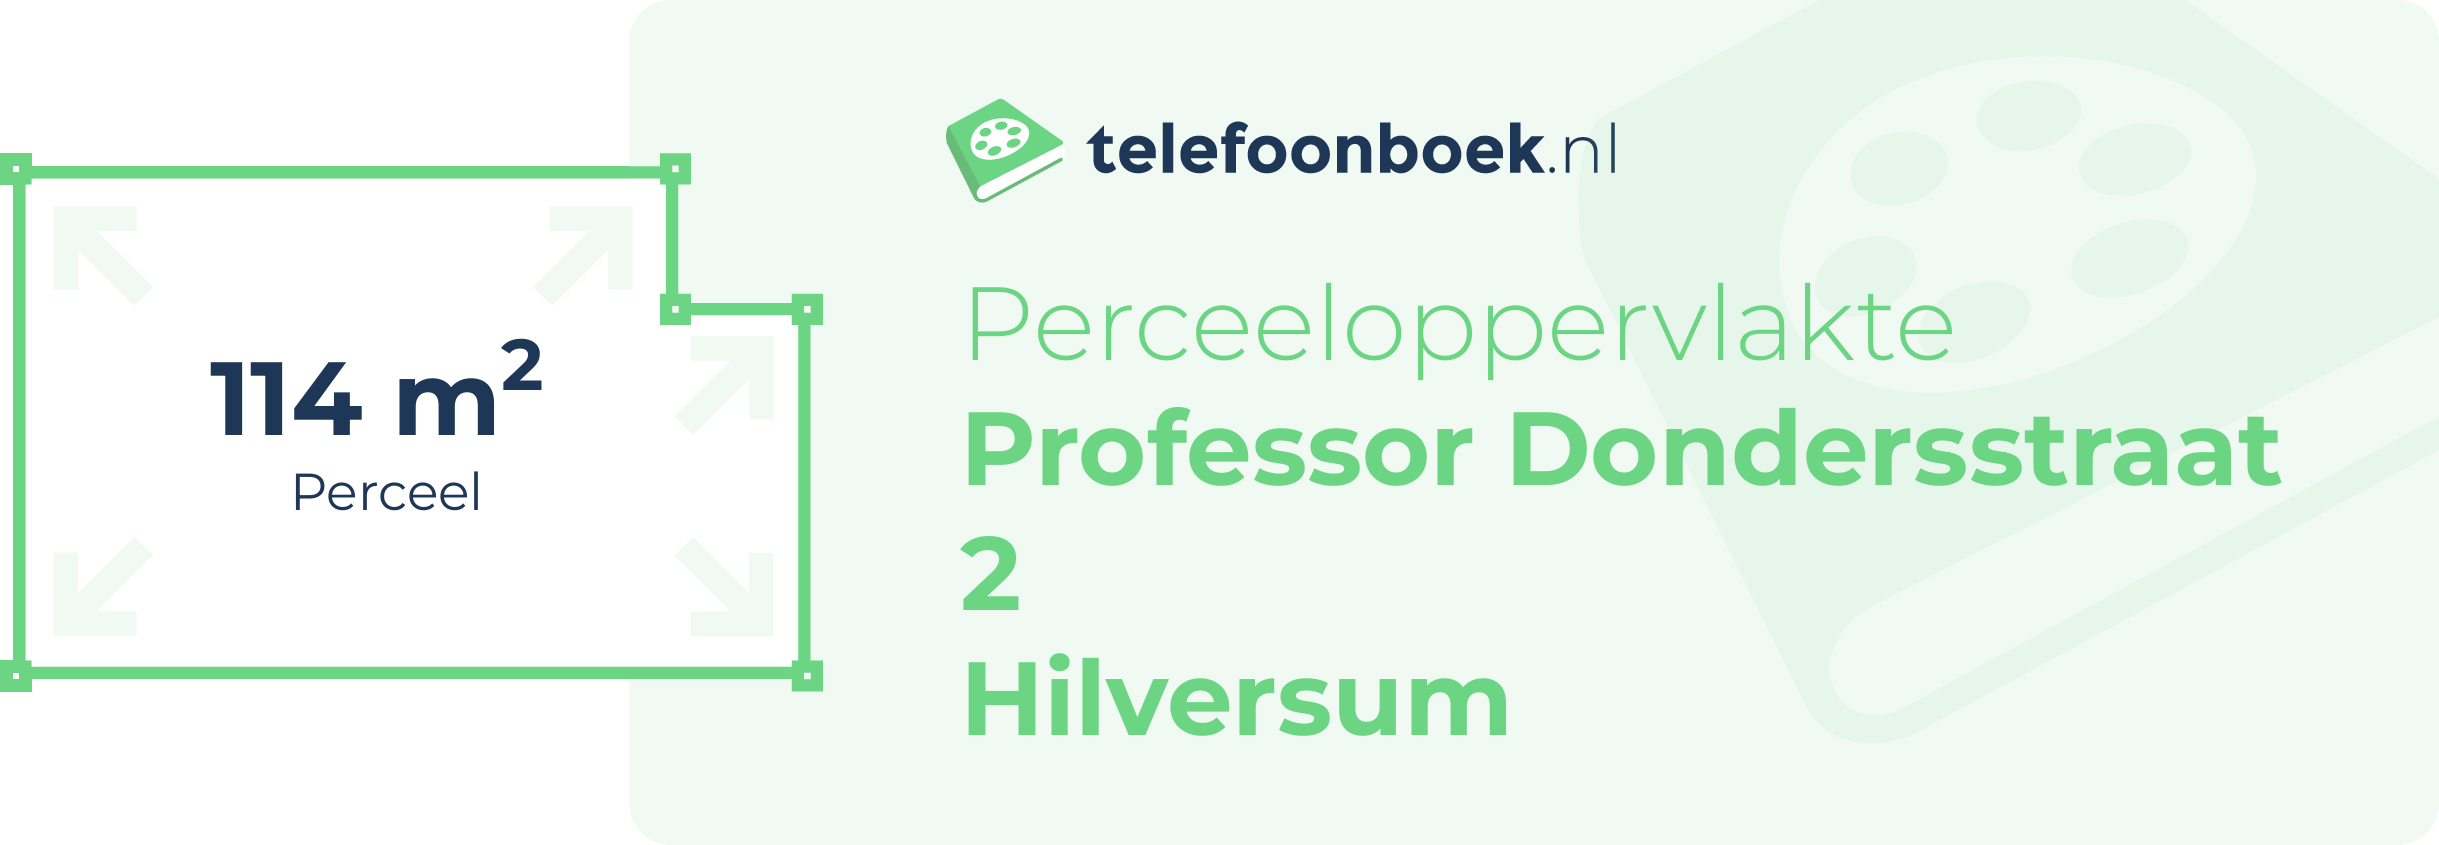 Perceeloppervlakte Professor Dondersstraat 2 Hilversum